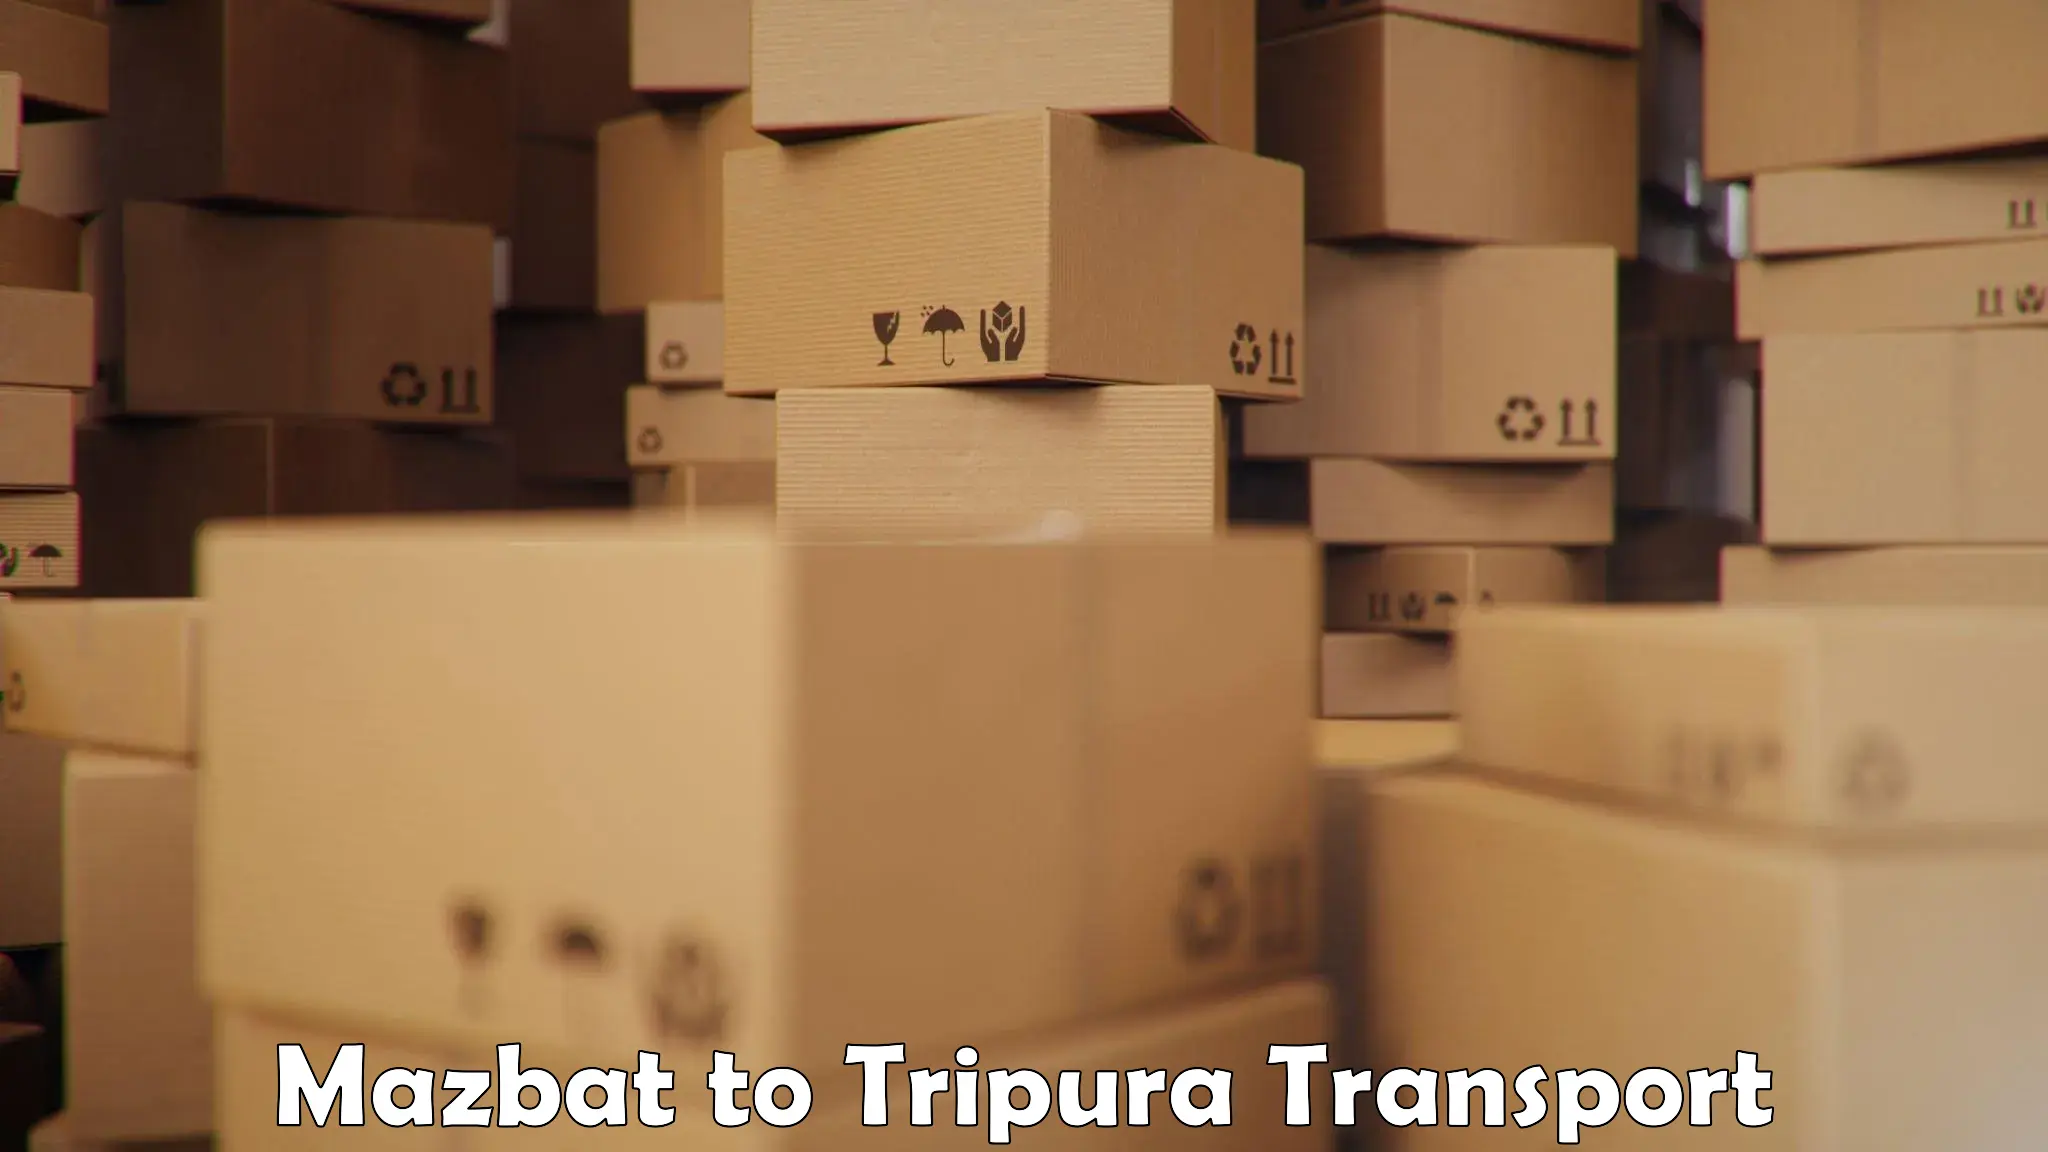 Air freight transport services Mazbat to IIIT Agartala